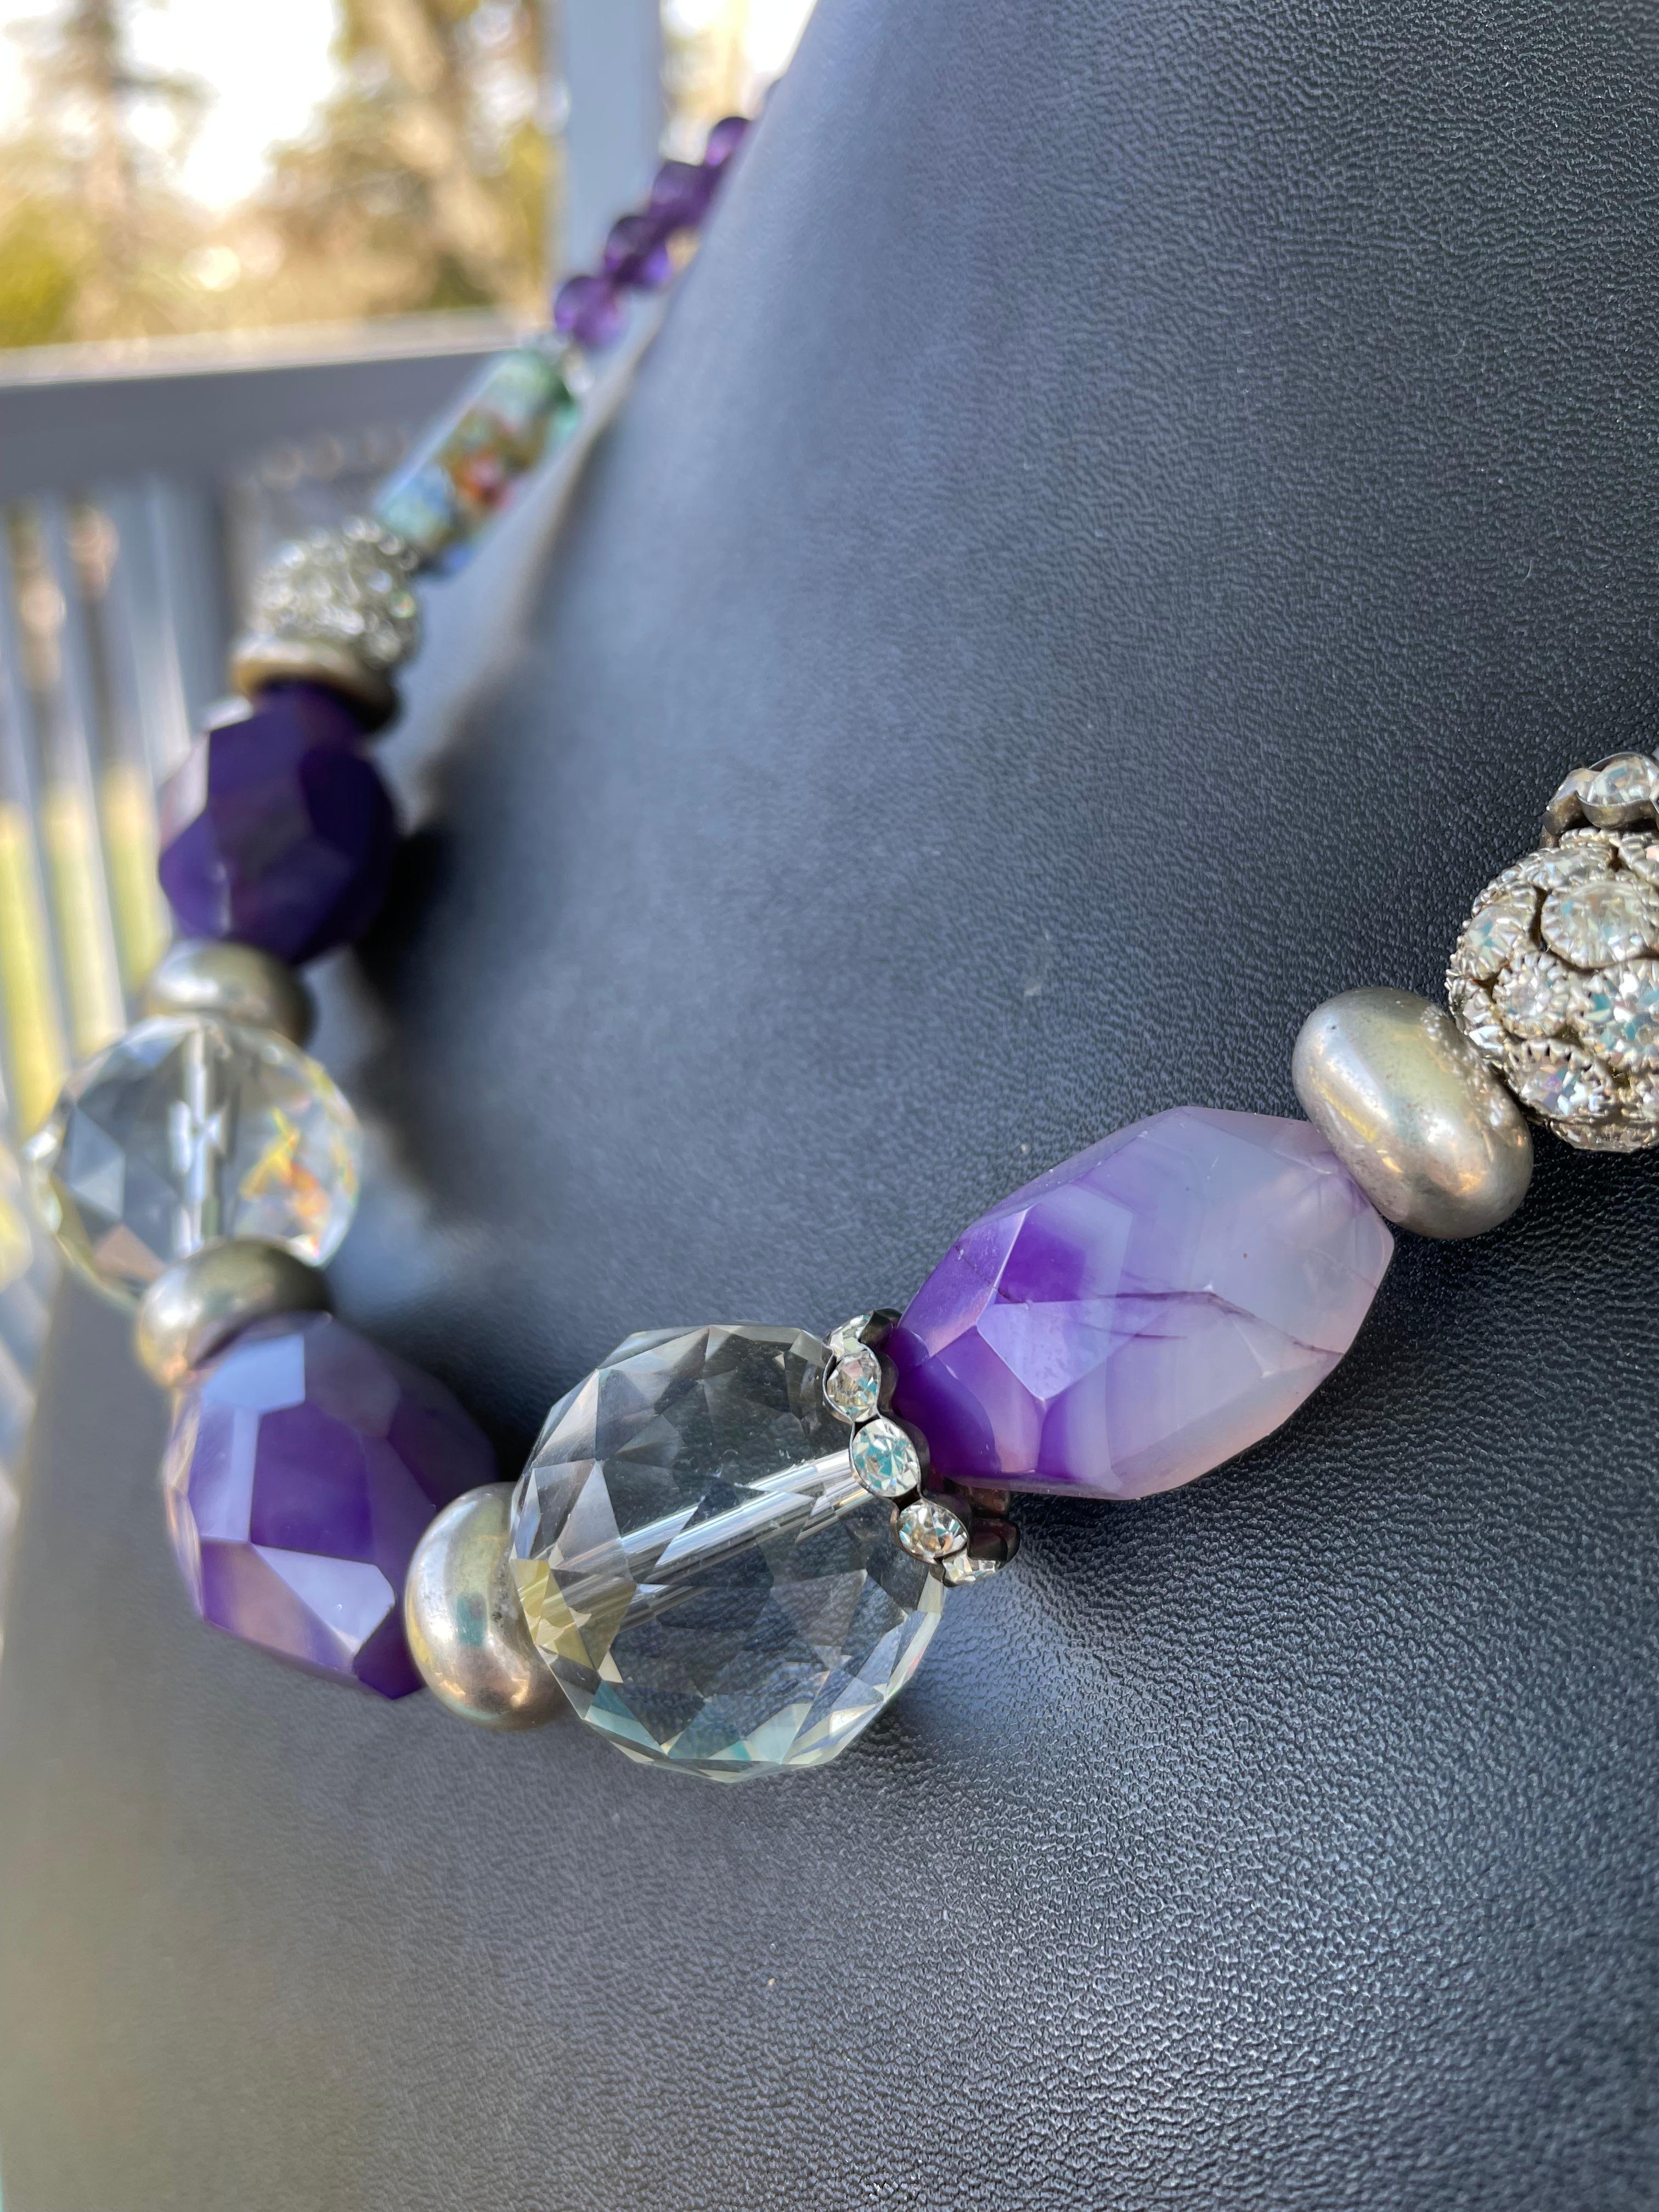 Lorraine's Bijoux bietet eine einzigartige, handgefertigte OOAK Perlenkette aus fabelhaften lila gefärbten Achaten, echtem Amethyst und wunderschönem Kristall. Dieses Schmuckstück ist ein echtes Statement mit Donut-Rondellen aus Sterlingsilber,